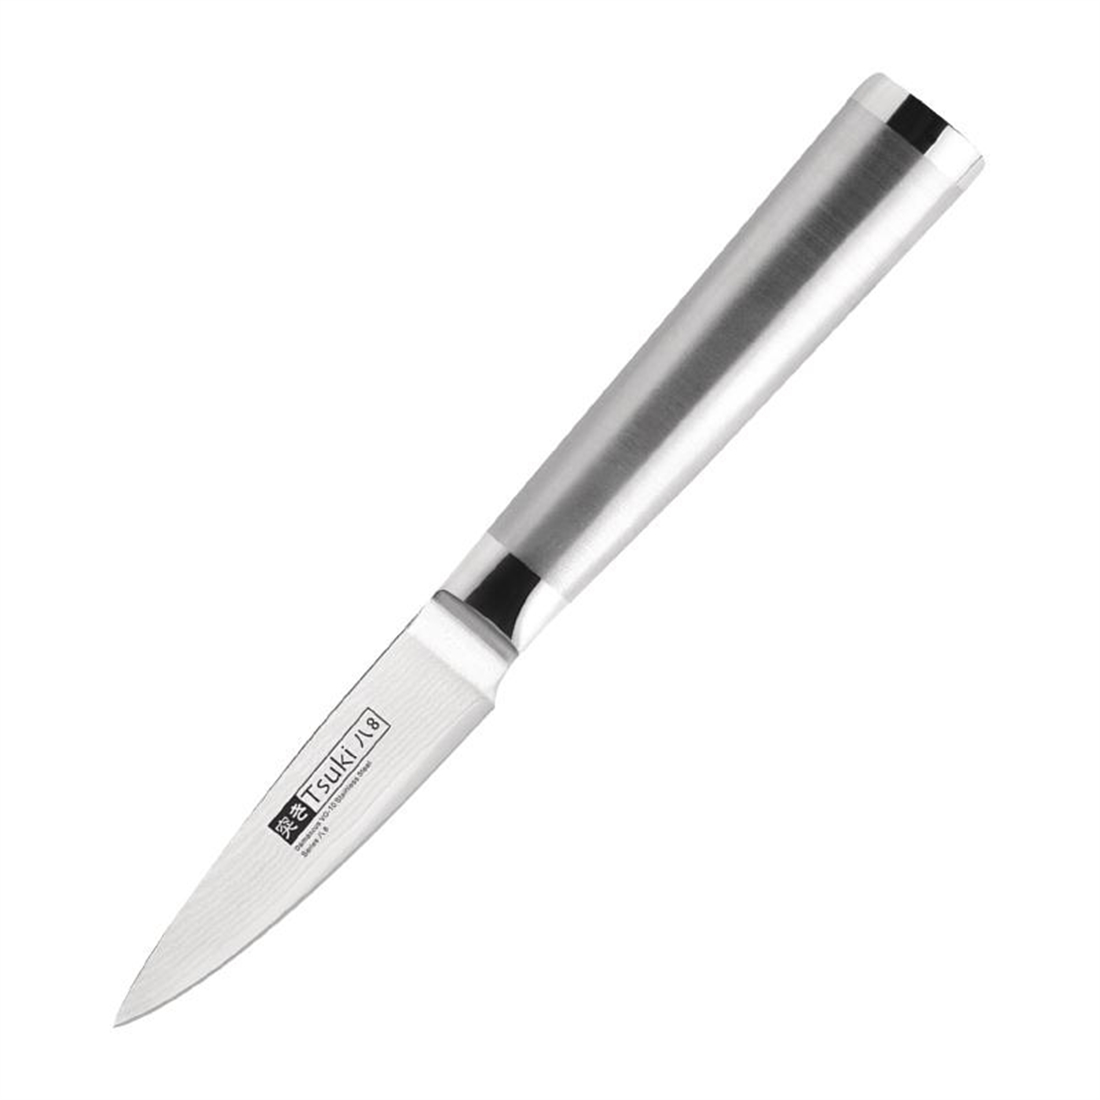 Tsuki Series 8 Paring Knife 8.8cm